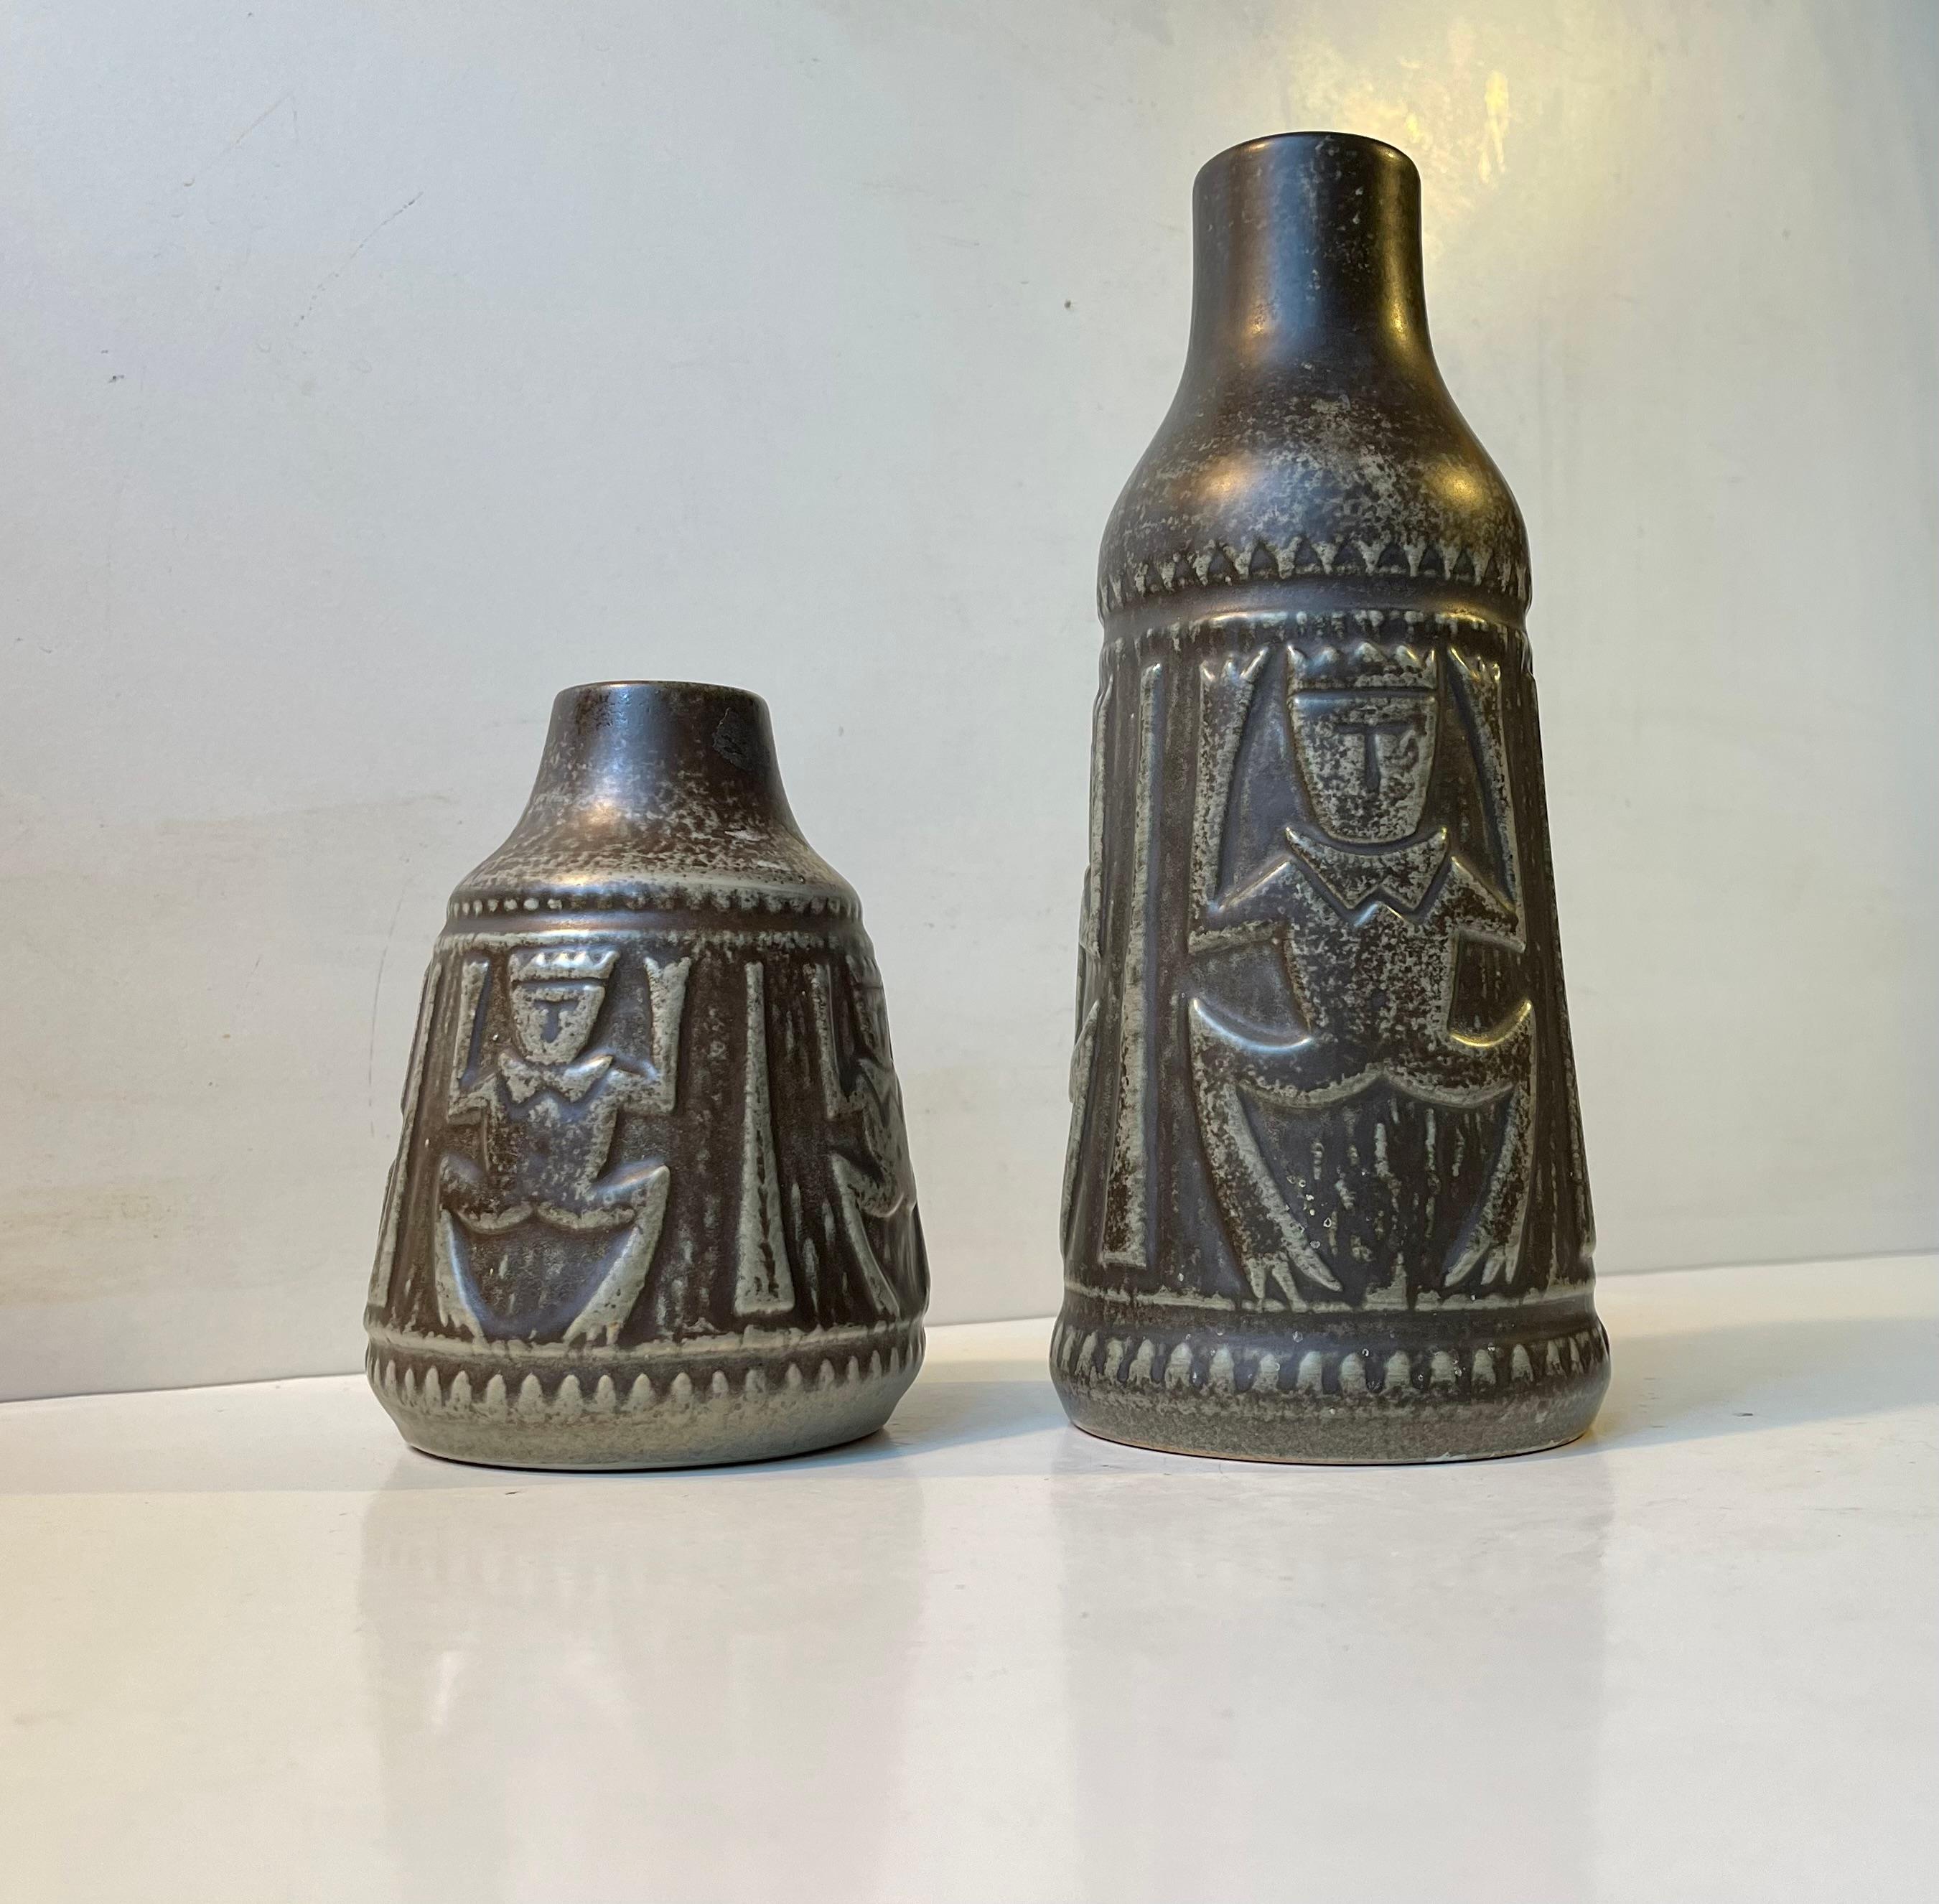 Danish Modern Ceramic Troll Vases by Johannes Pedersen & Gustav Ottesen, 1970s In Good Condition For Sale In Esbjerg, DK